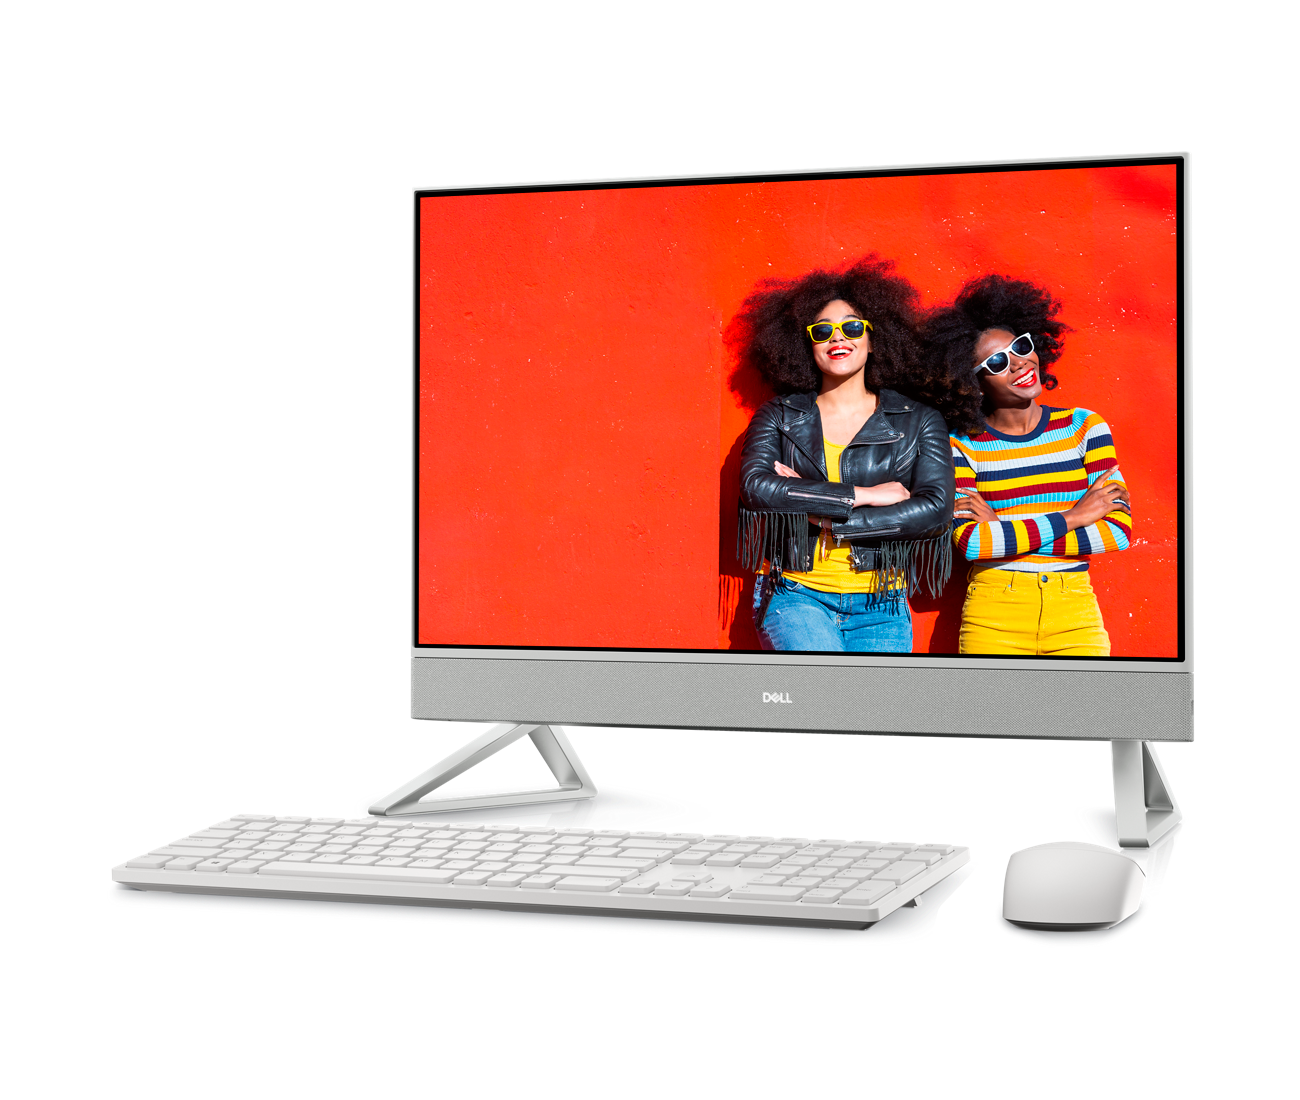 diapositiva 1 de 6, aumentar tamaño, imagen de una dell inspiron 24 5410 todo en uno blanca con dos mujeres usando lentes de sol en la pantalla del monitor.